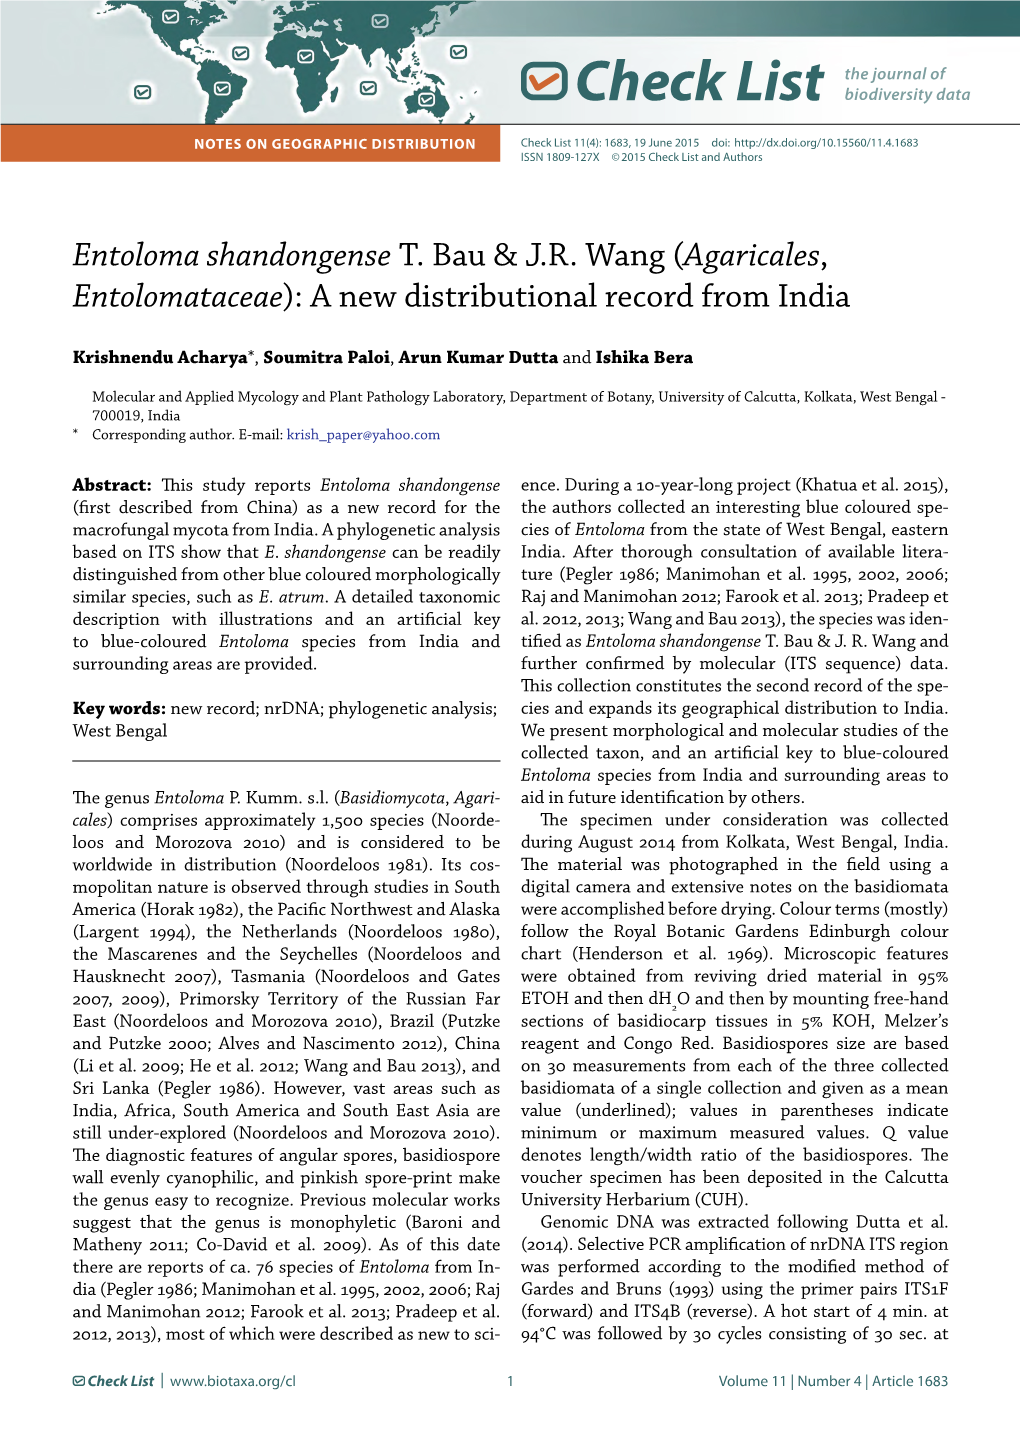 Entoloma Shandongense T. Bau & JR Wang (Agaricales, Entolomataceae